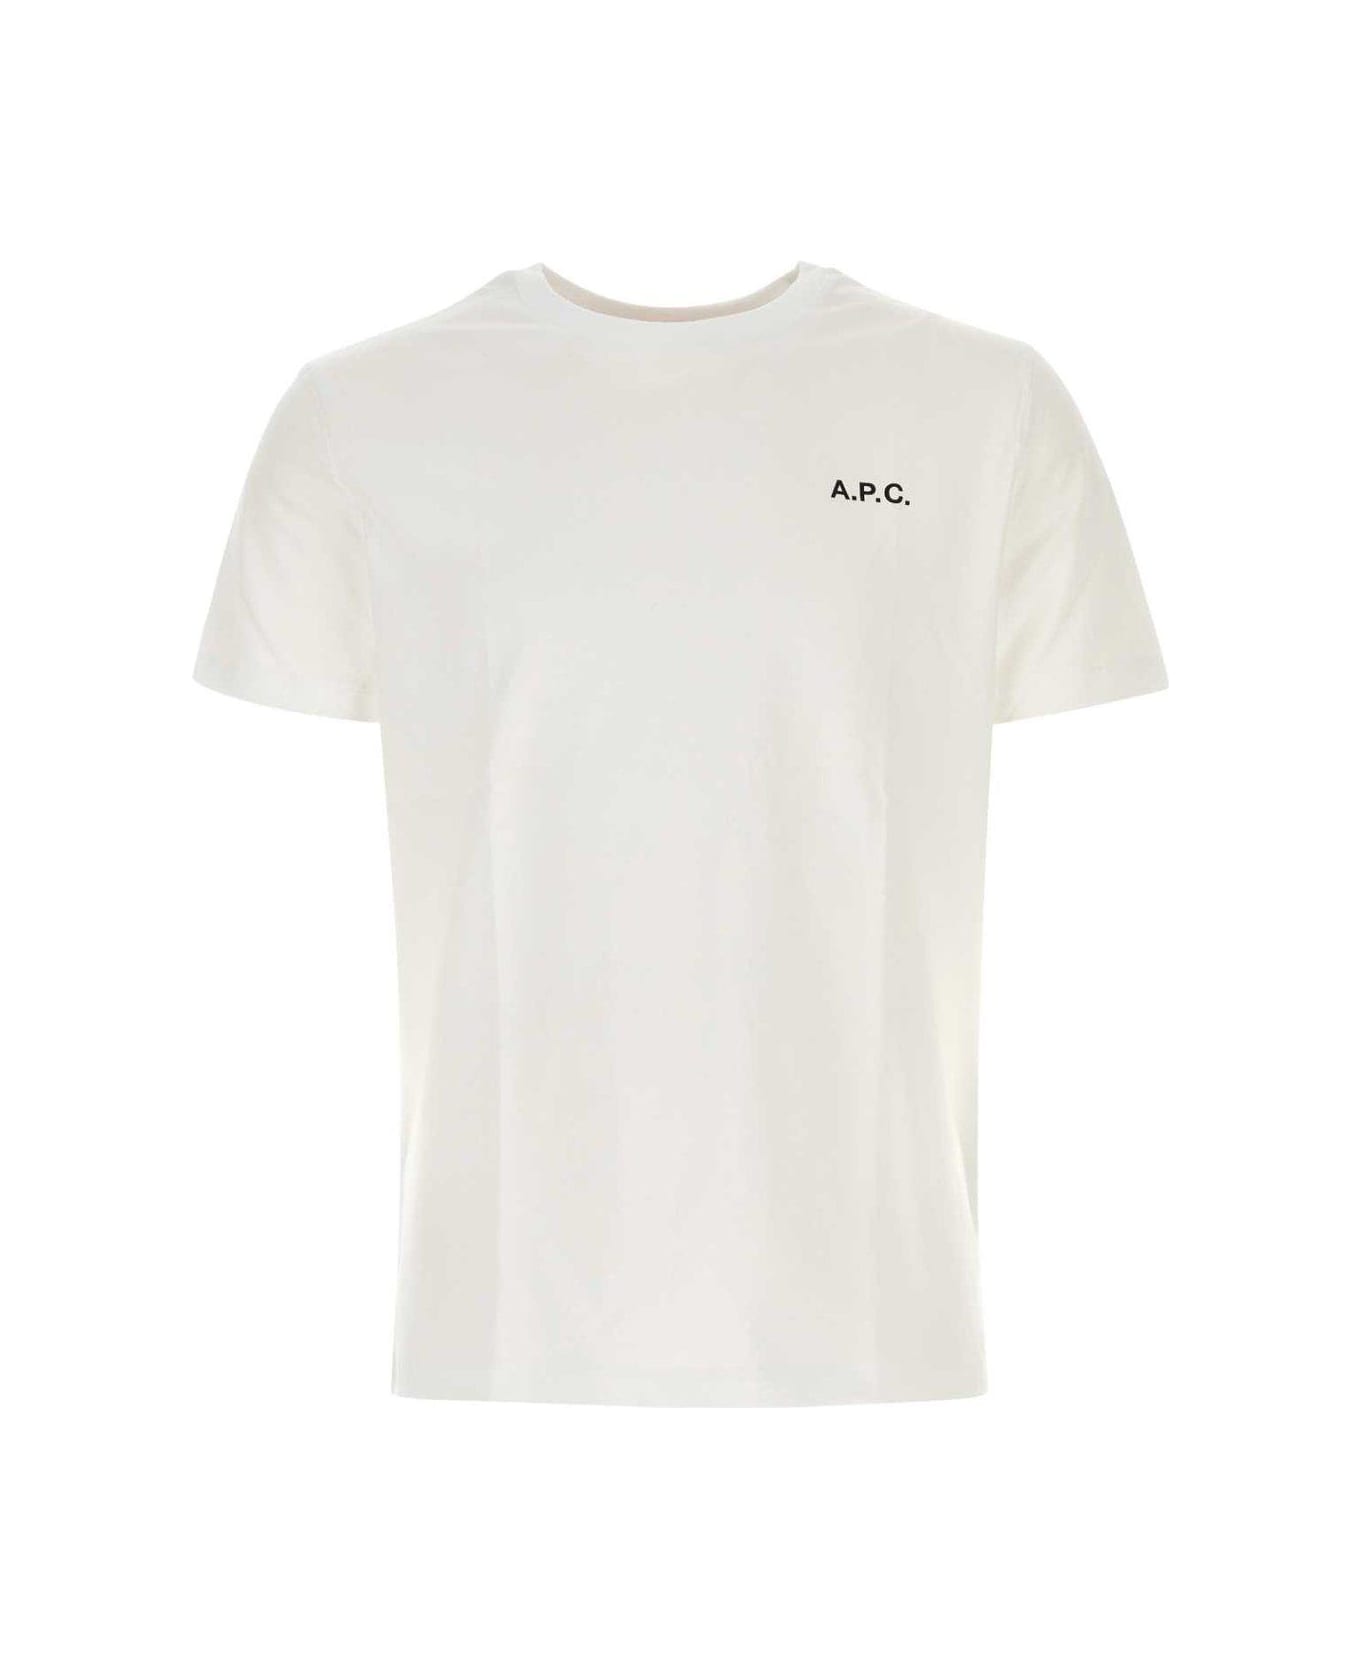 A.P.C. Logo Printed Crewneck T-shirt - Aab White